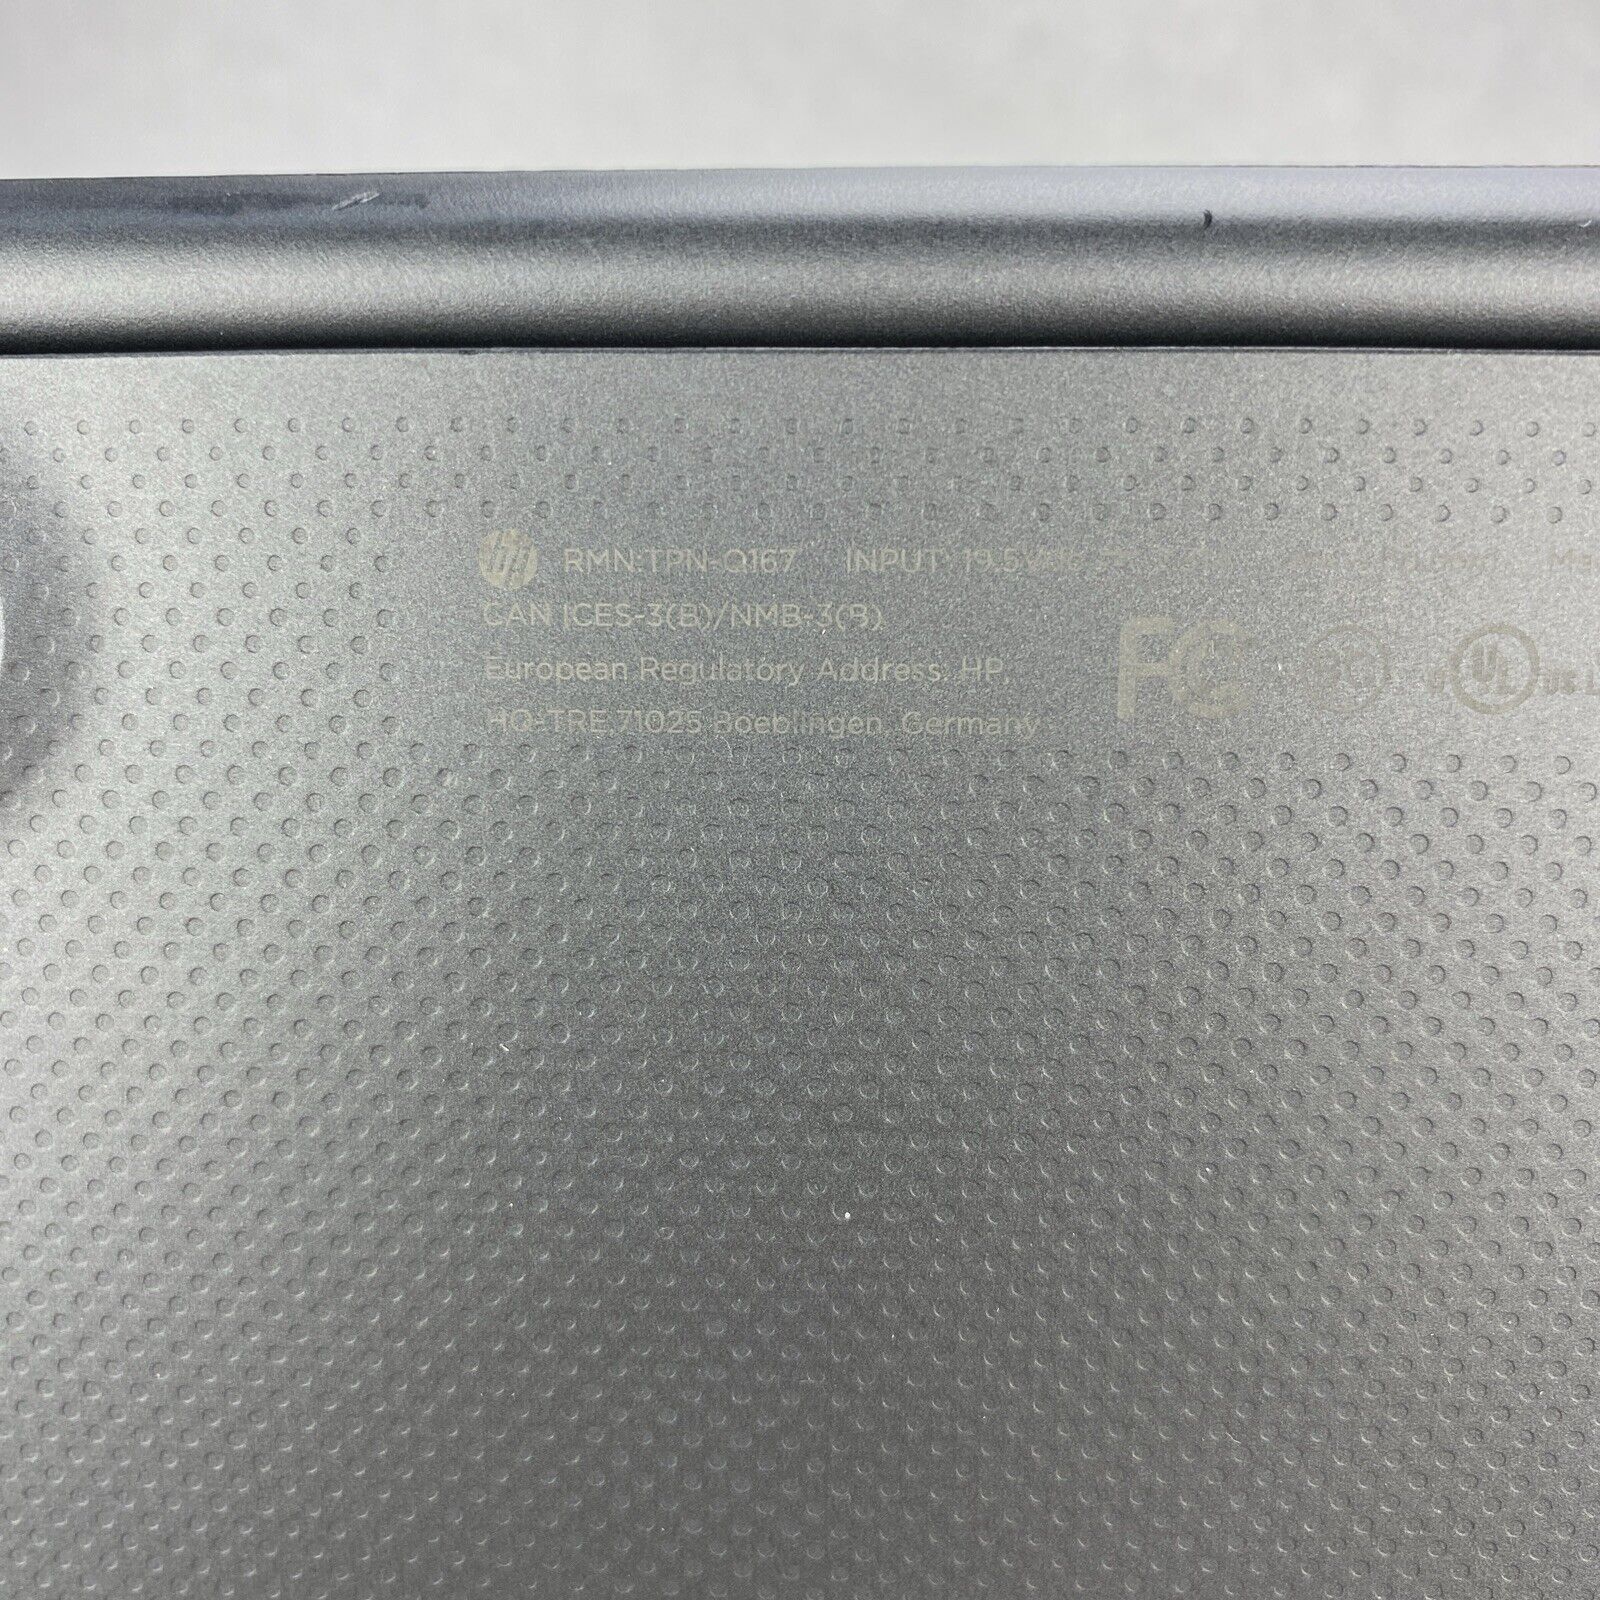 HP ChromeBook 14 G4 Intel Celeron N2840 2.16GHz 4GB RAM 16GB NO AC Adapter READ